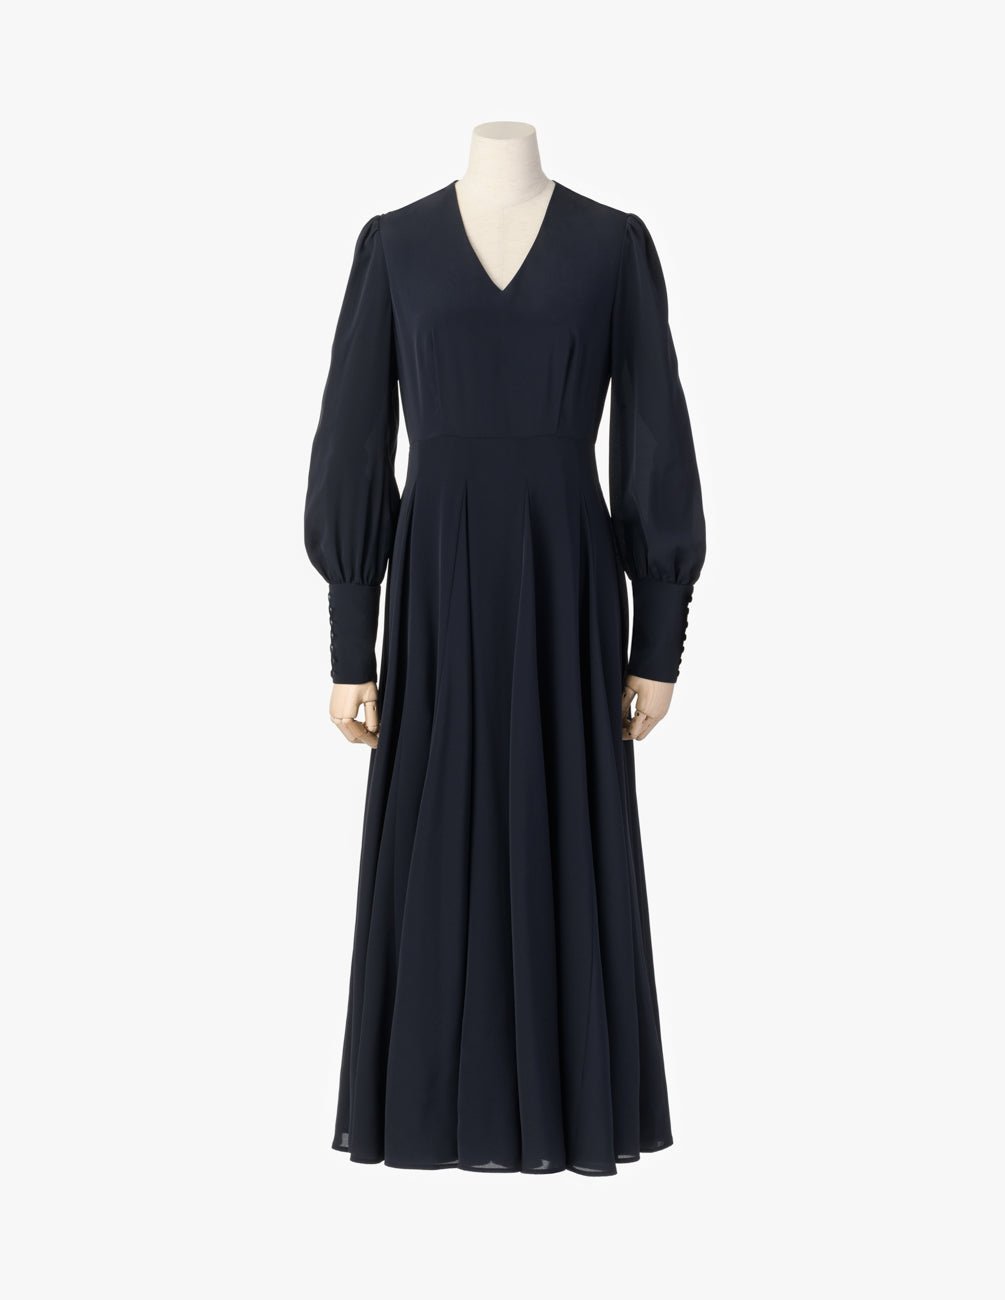 マリハ ワンピース 彗星のドレス(長袖) Navy シティードレス